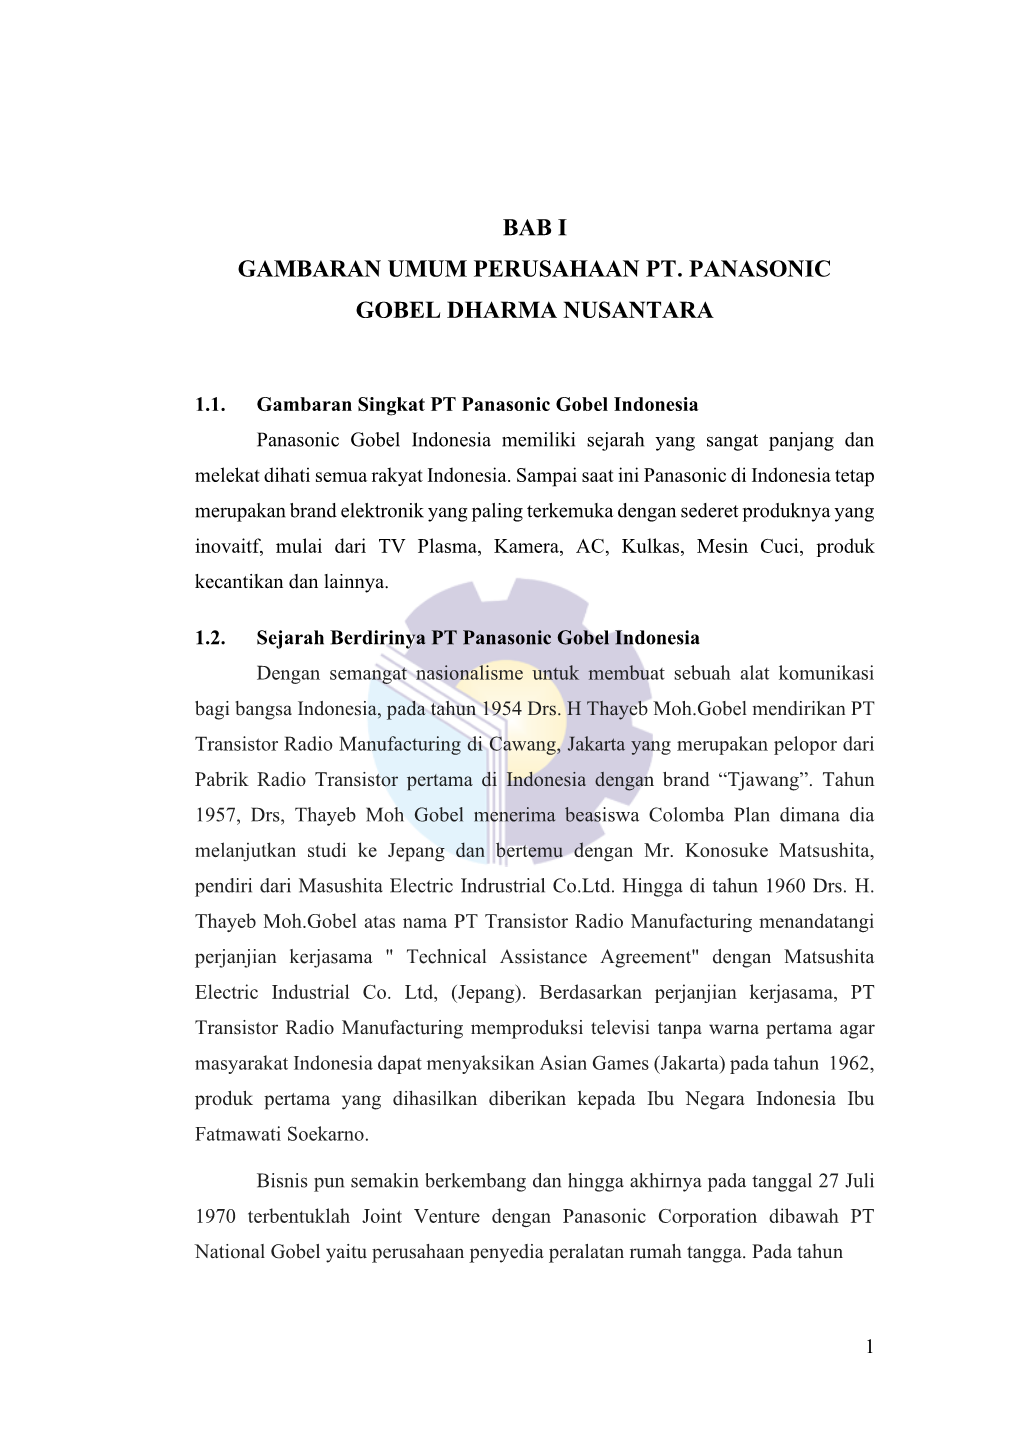 Bab I Gambaran Umum Perusahaan Pt. Panasonic Gobel Dharma Nusantara